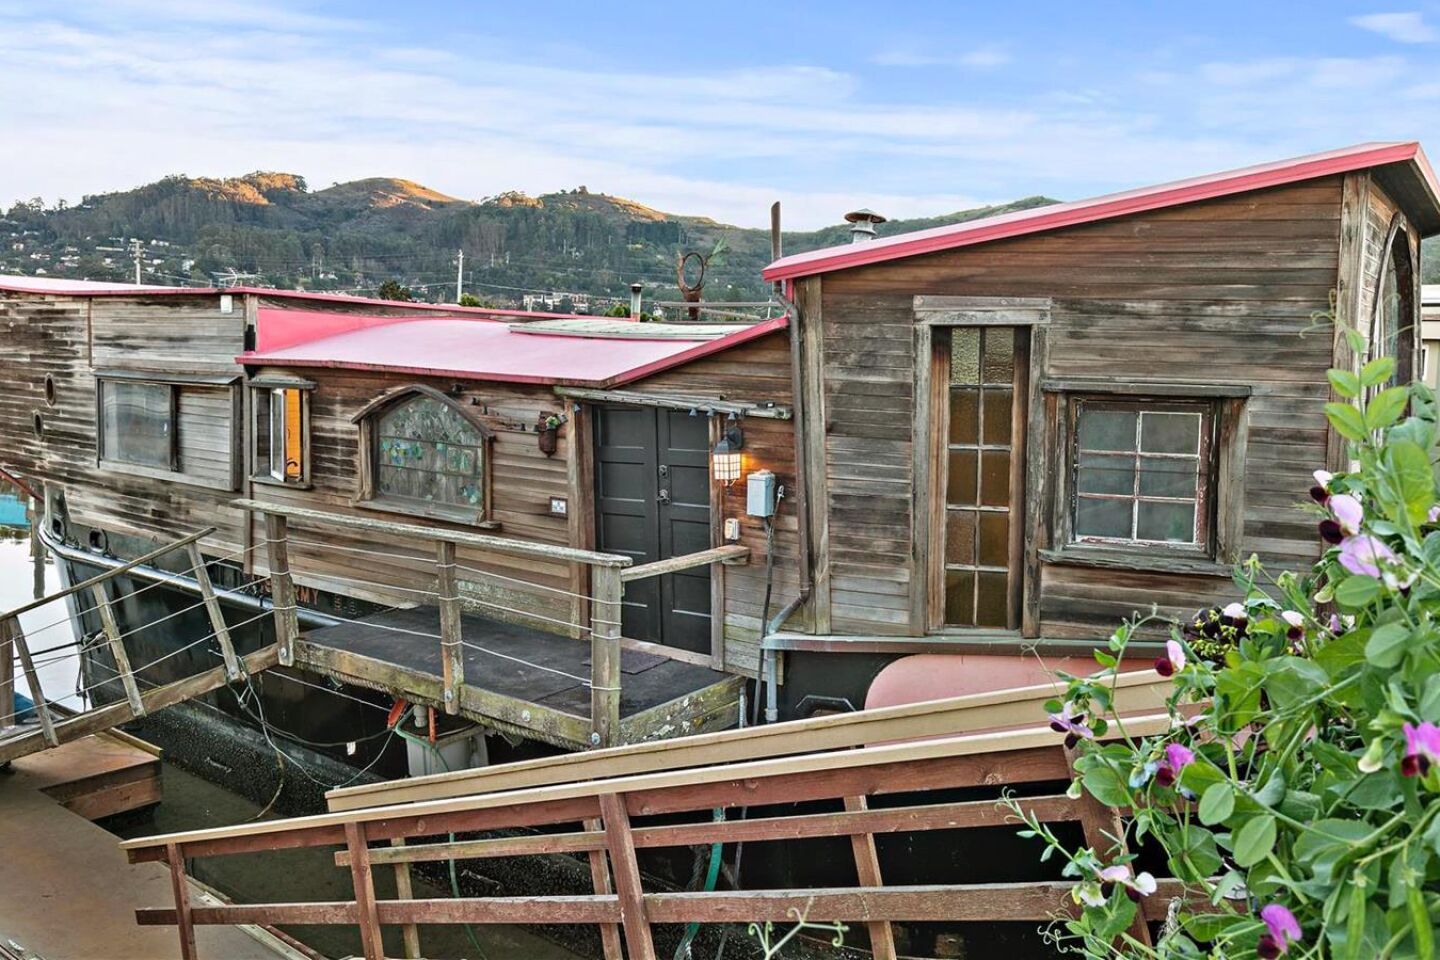 Shel Silverstein's former houseboat